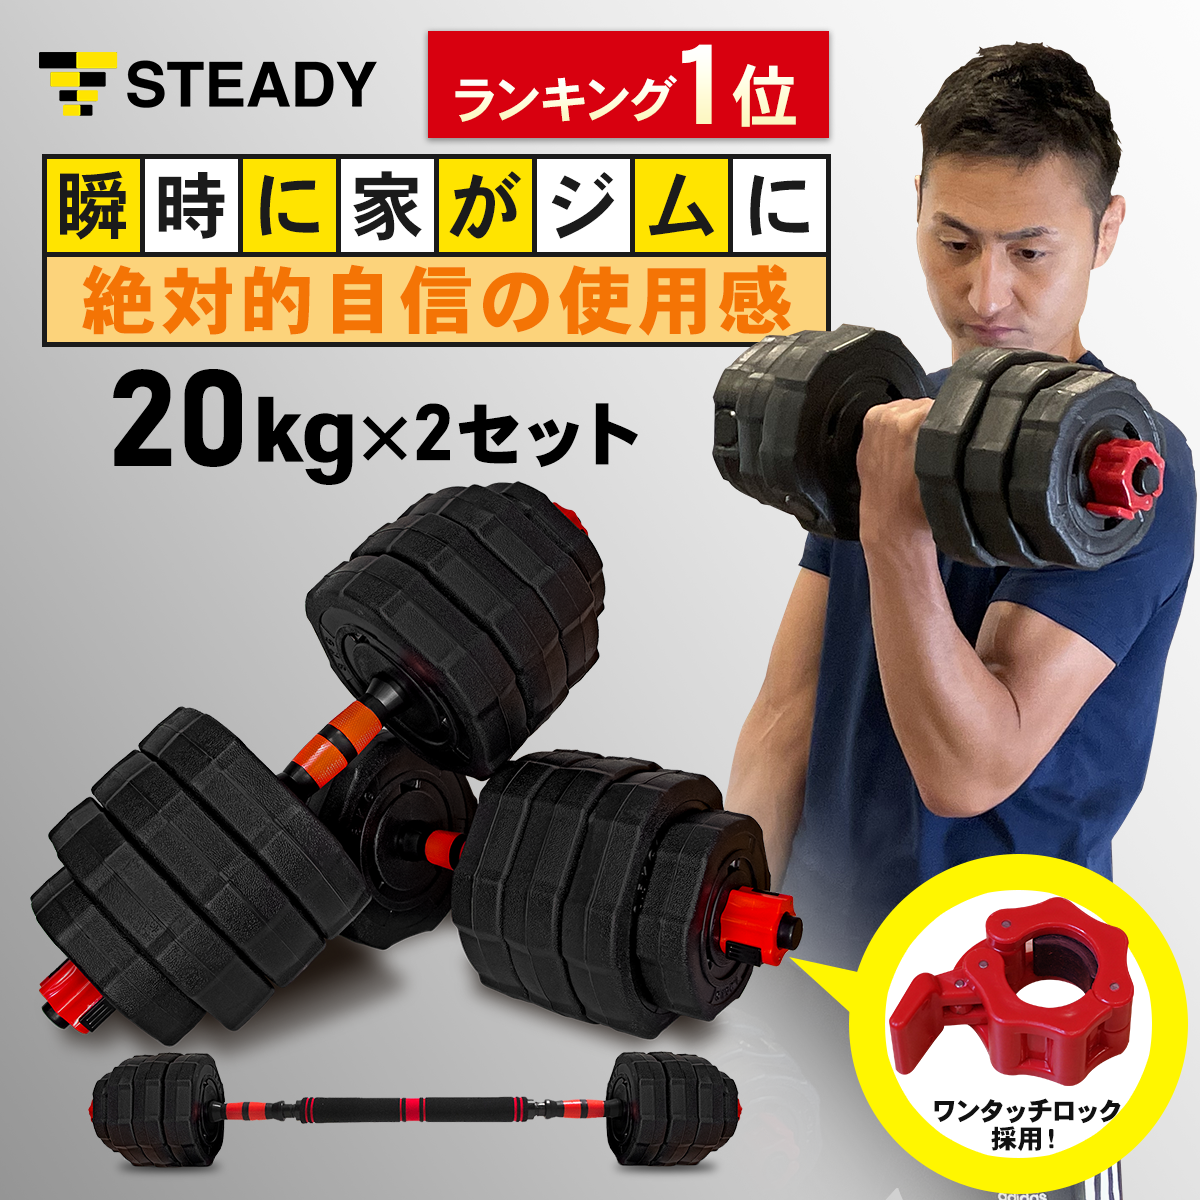 トレーニング用品ダンベル 可変式 40kg 鉄アレイ アジャスタブルダンベル 筋トレ 450